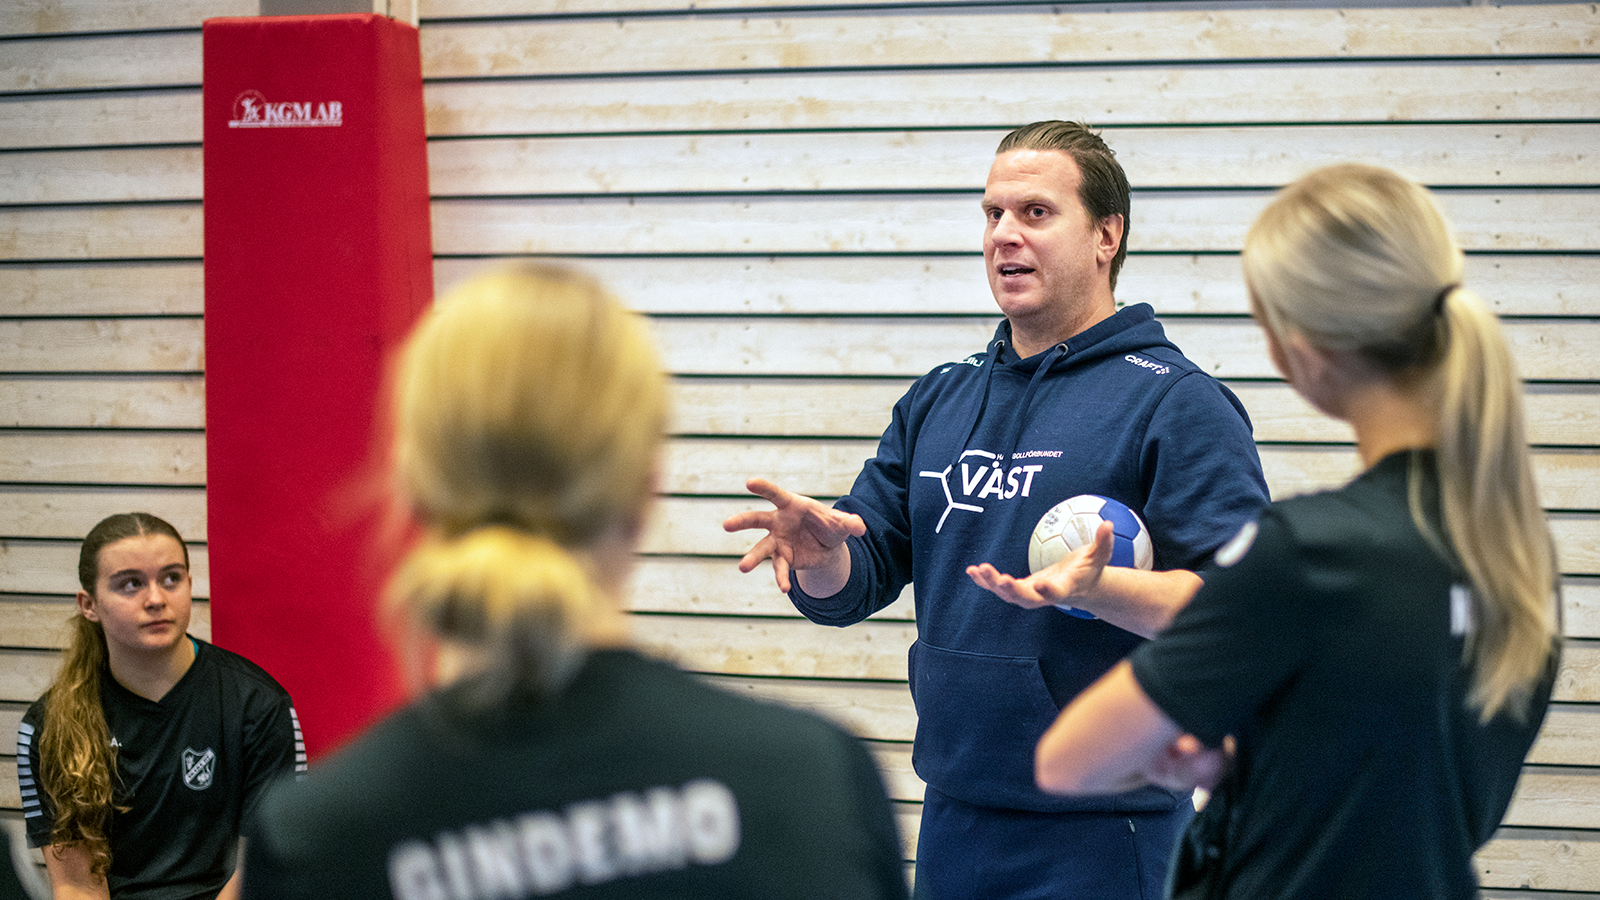 instruktör pratar med spelare och håller i en boll. Foto: Stefan Svensson